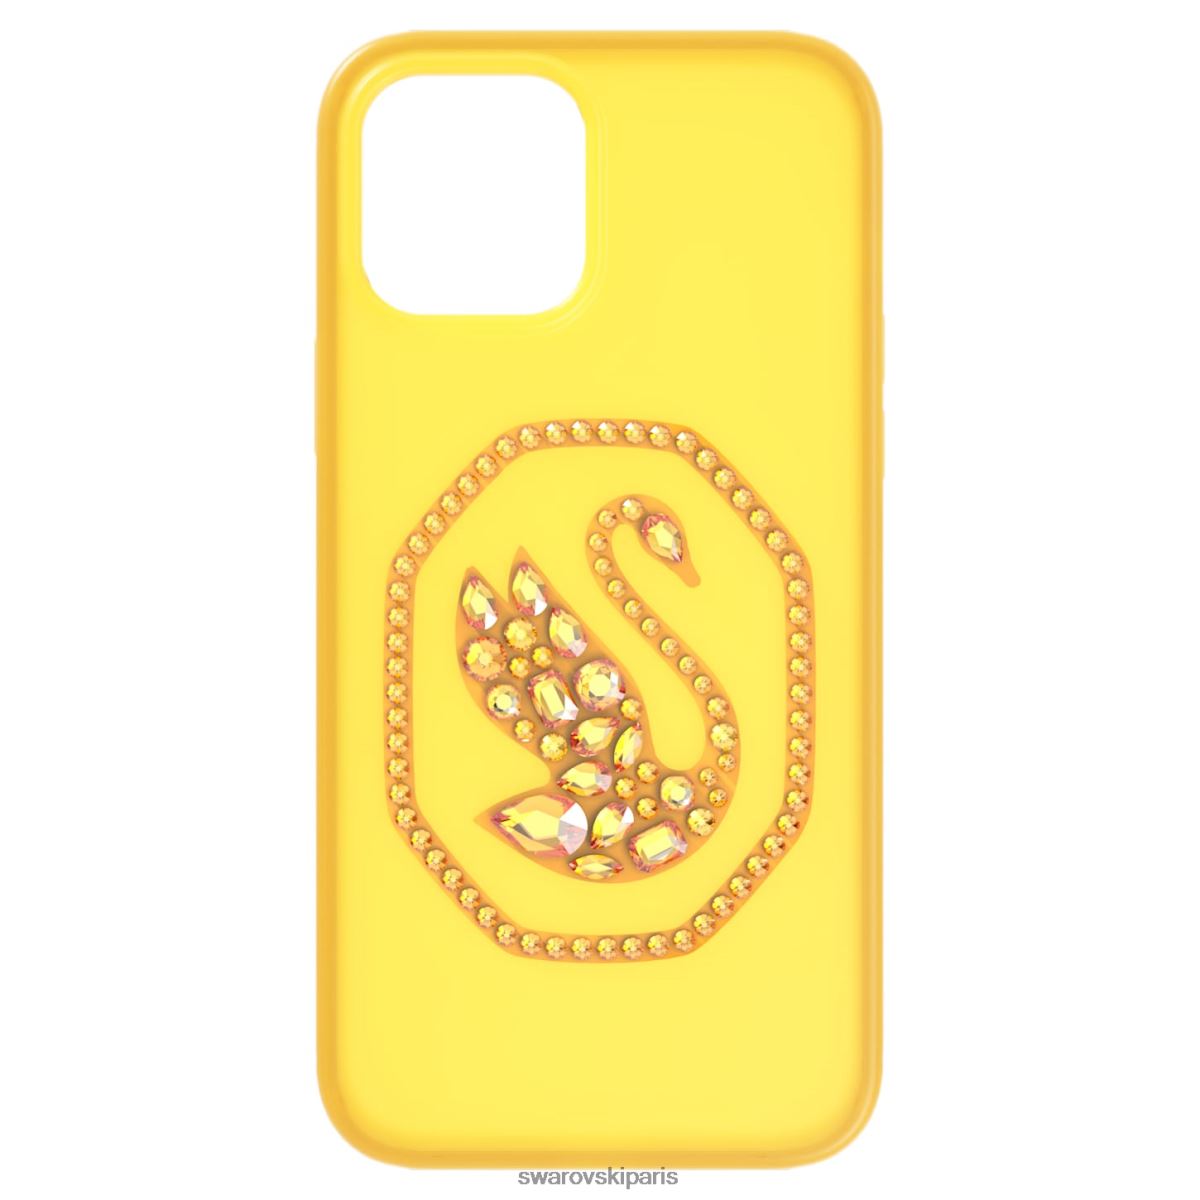 accessoires Swarovski étui pour smartphone jaune RZD0XJ1393